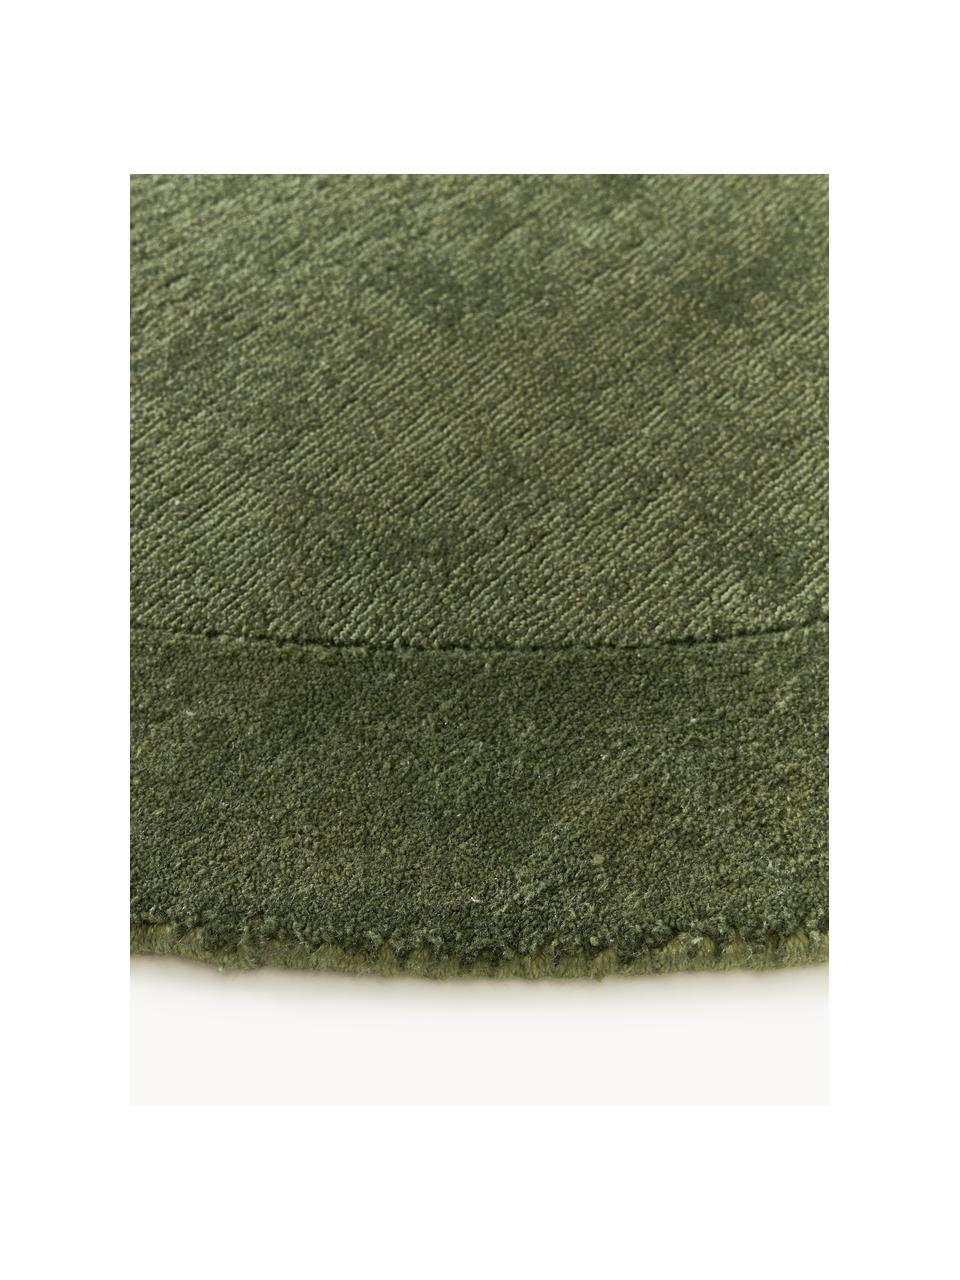 Kulatý koberec s nízkým vlasem Kari, 100 % polyester, certifikace GRS, Odstíny tmavě zelené, Ø 150 cm (velikost M)